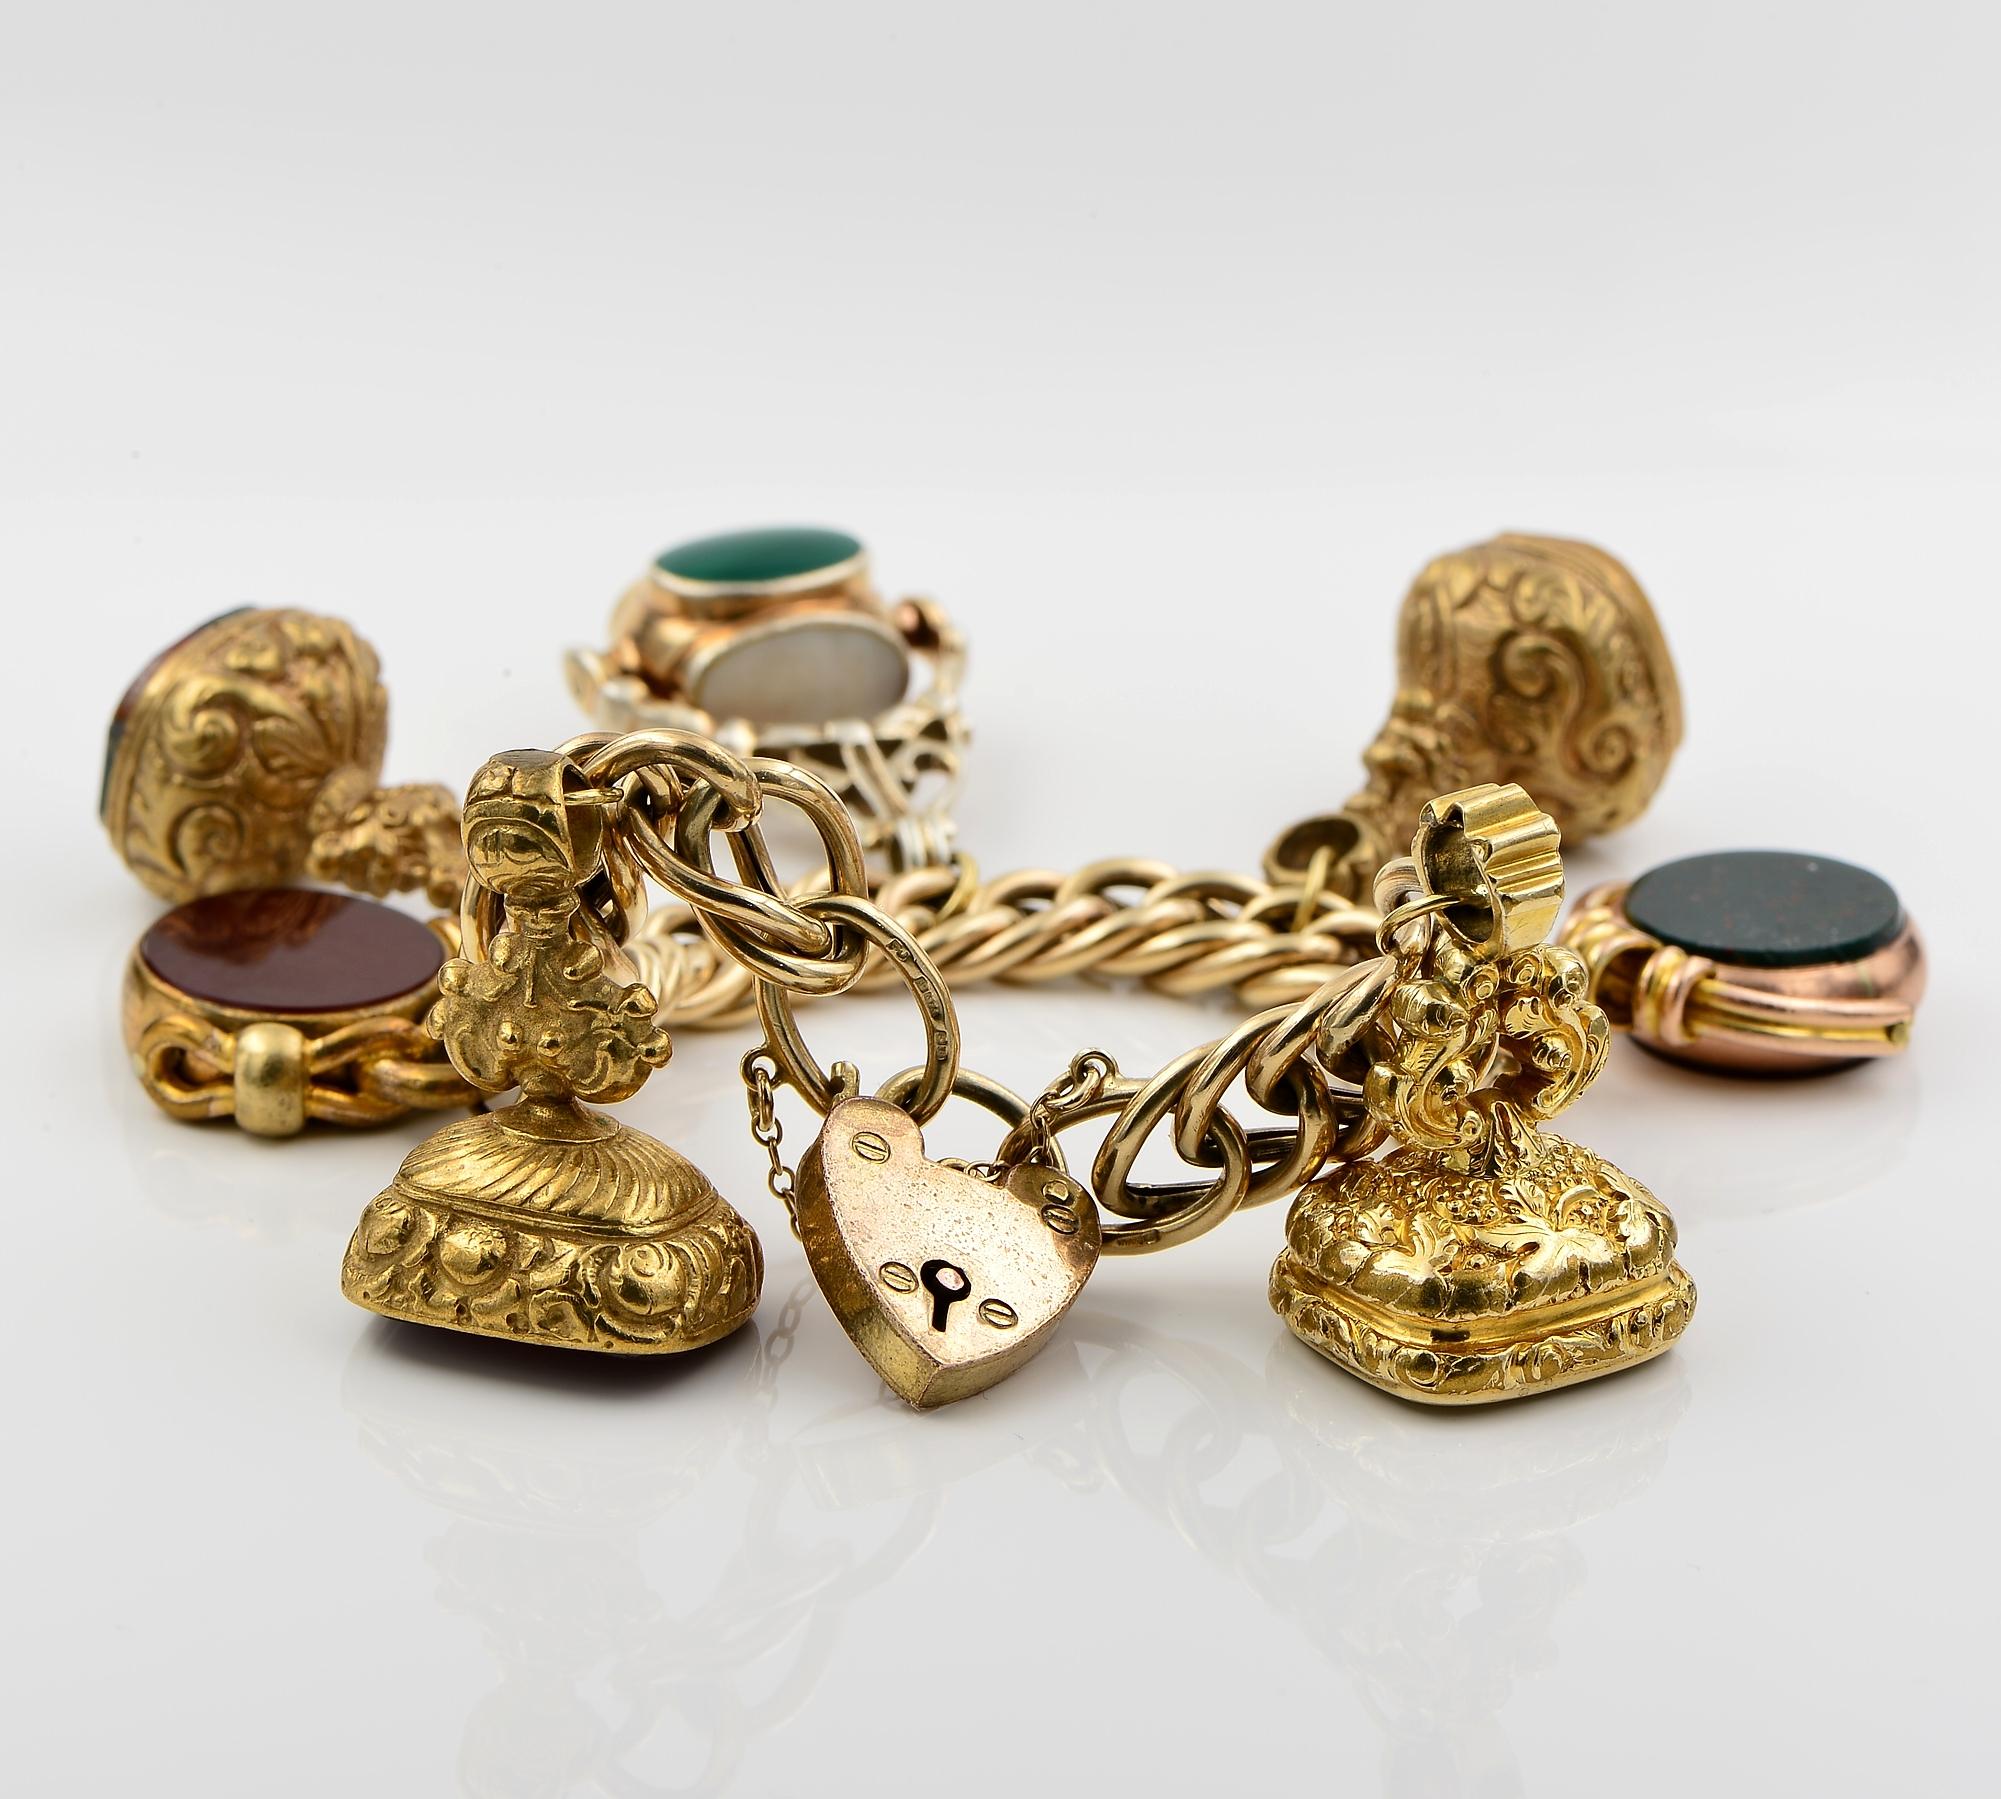 Collectional avec amour
Ce très joli bracelet vintage anglais a été chargé d'une collection d'objets anciens, intéressants et uniques en pierre dure Pinchbeck ou en or, un en argent et un cadenas en forme de cœur en Pinchbeck, tous grands et pleins